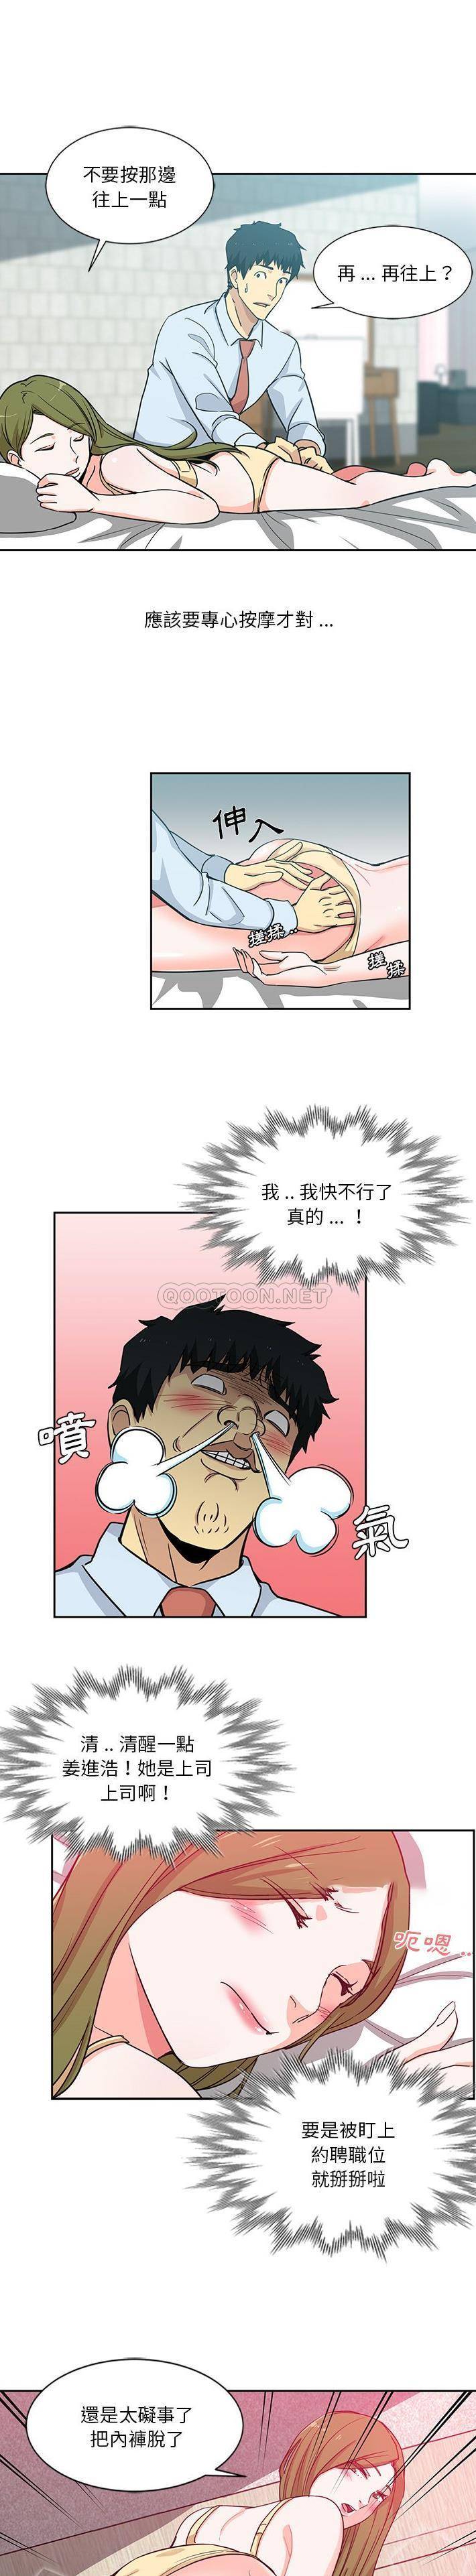 韩国污漫画 危險純友誼 第13话 3